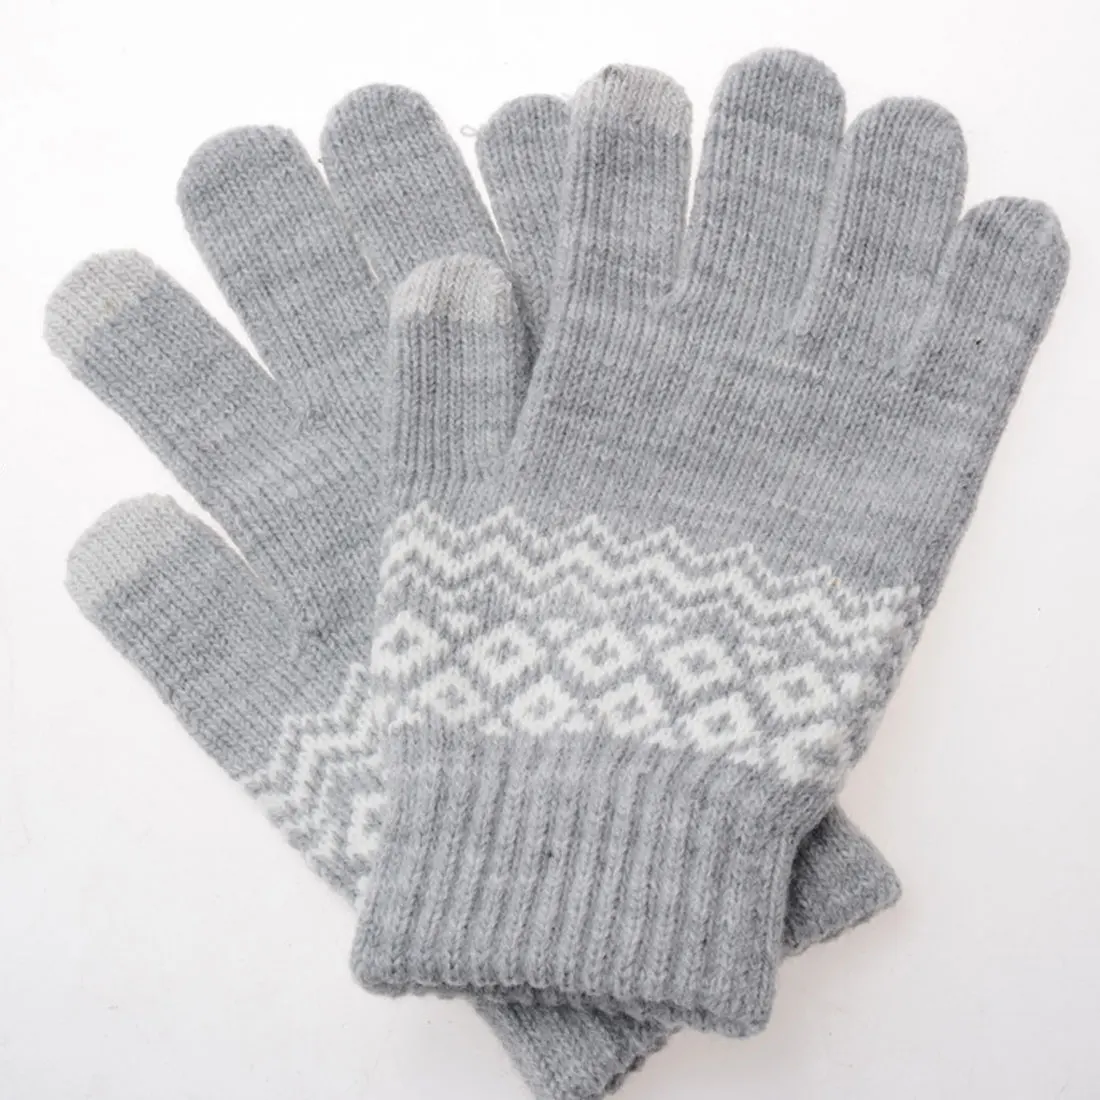 Топ продаж стрейч зимние вязаные перчатки для Для женщин Для мужчин квадратный варежки Применение смартфон Экран перчатки шерстяного трикотажа теплые Chirstmas подарок - Цвет: Gray